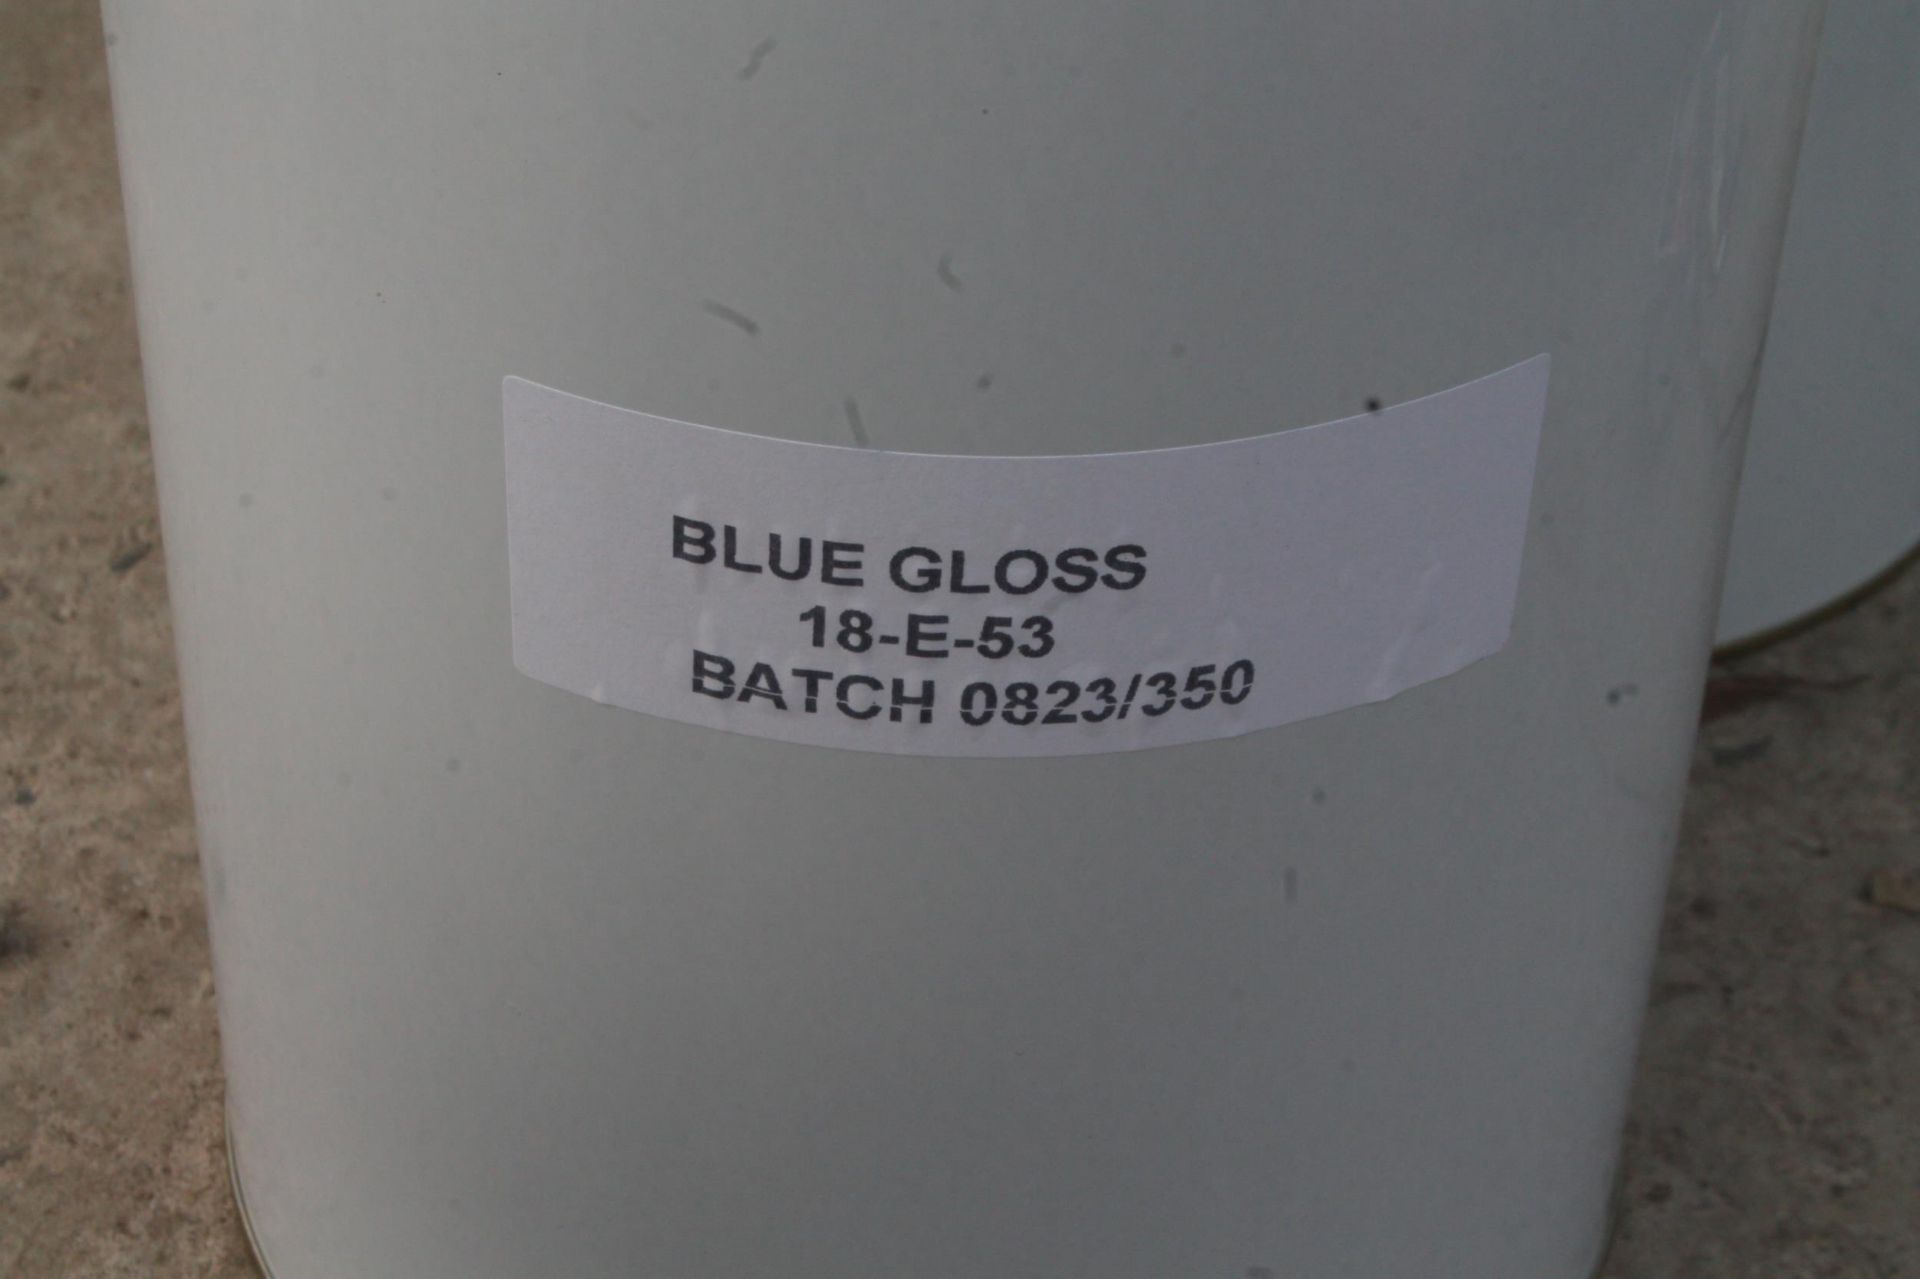 5 LT BLUE GLOSS X 2 + VAT - Image 2 of 2